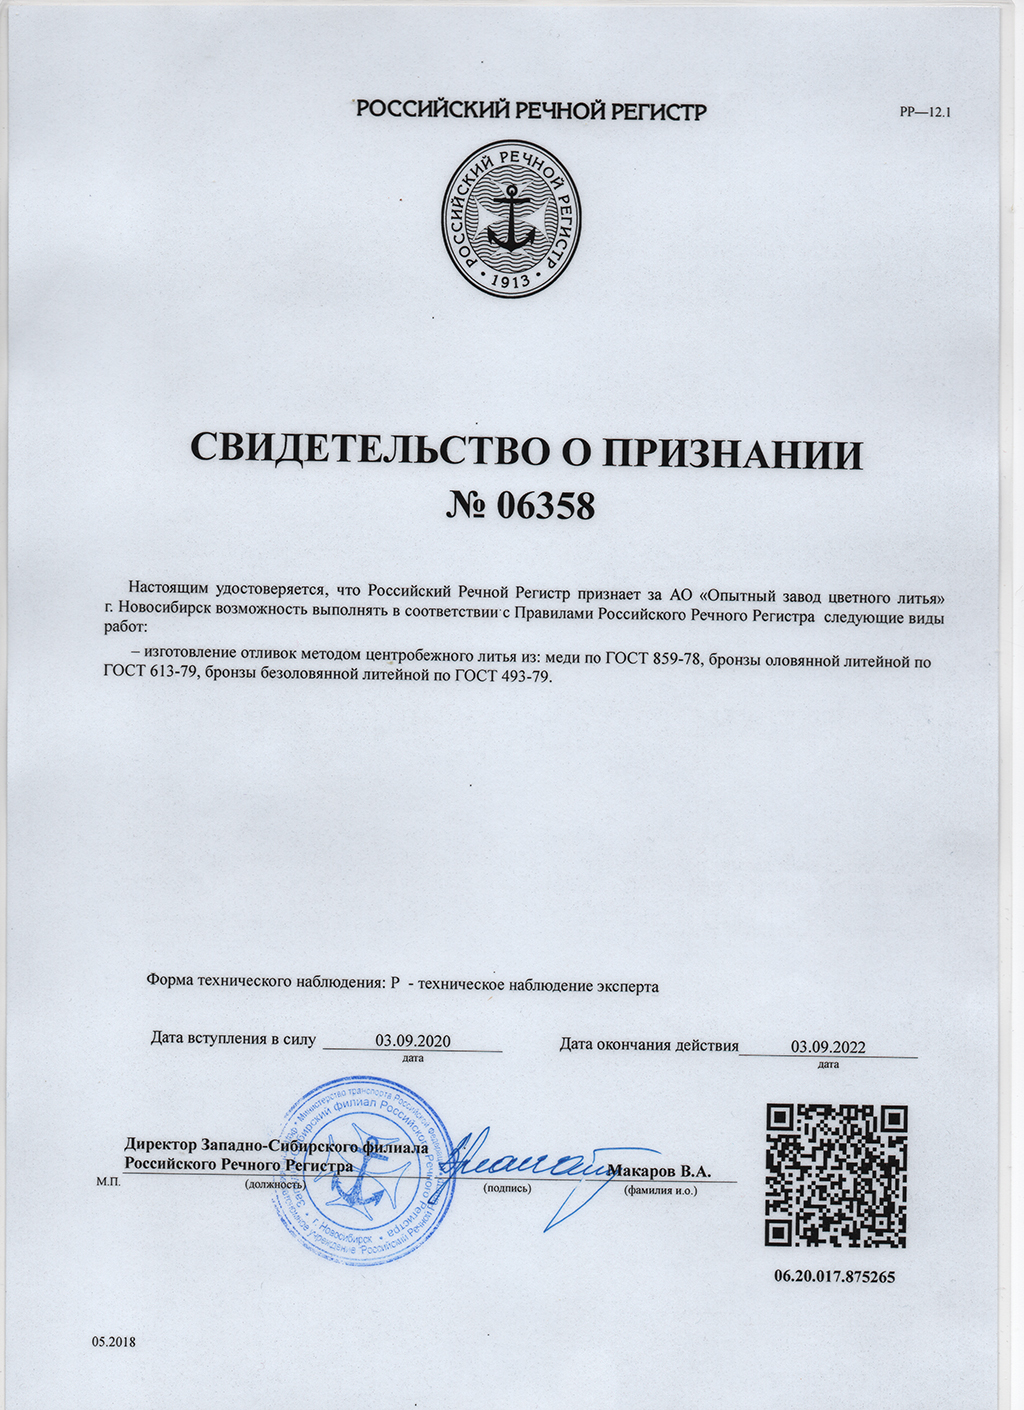 ОЗЦЛ получил свидетельство о признании Российского Речного Регистра